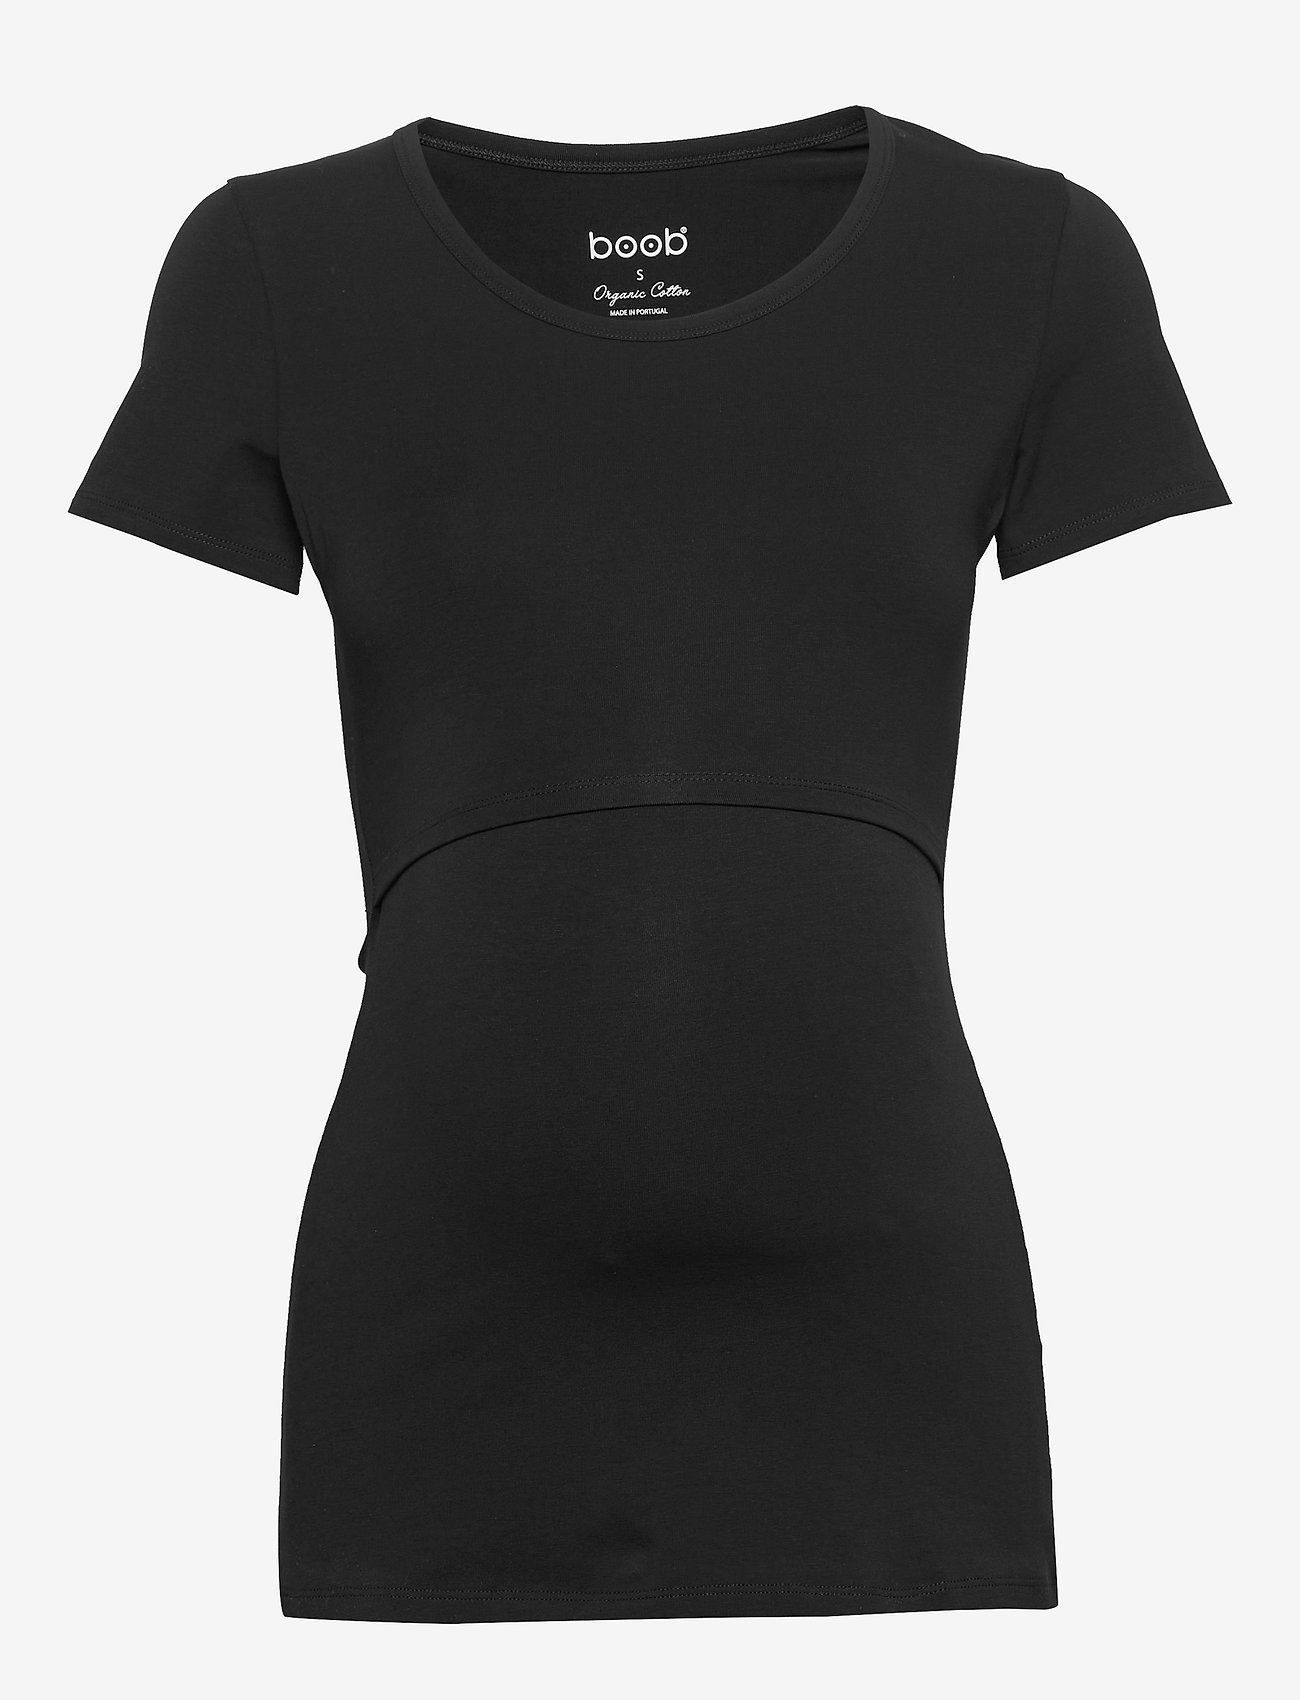 Boob - Classic s/s top - t-shirt & tops - black - 1